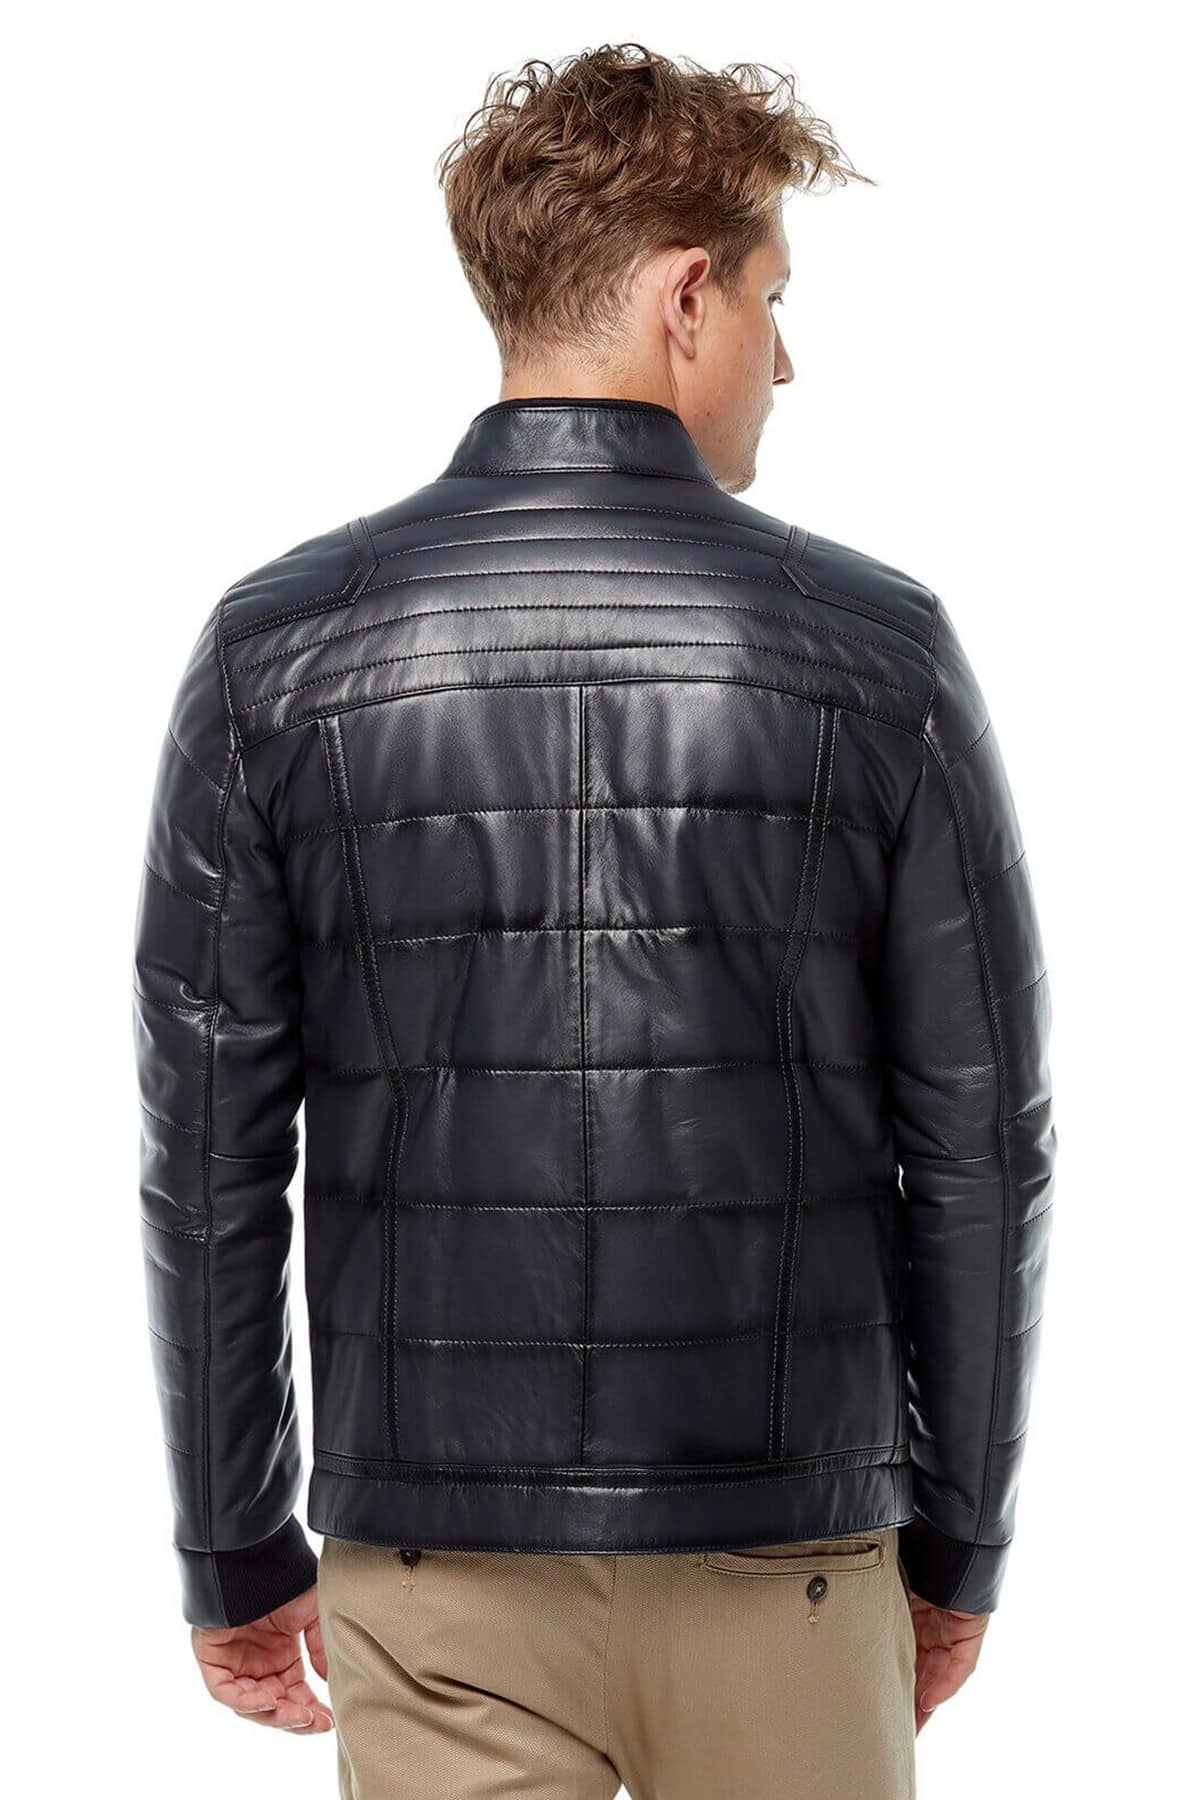 Navy Blue Bomber Fashion Leather Jacket2